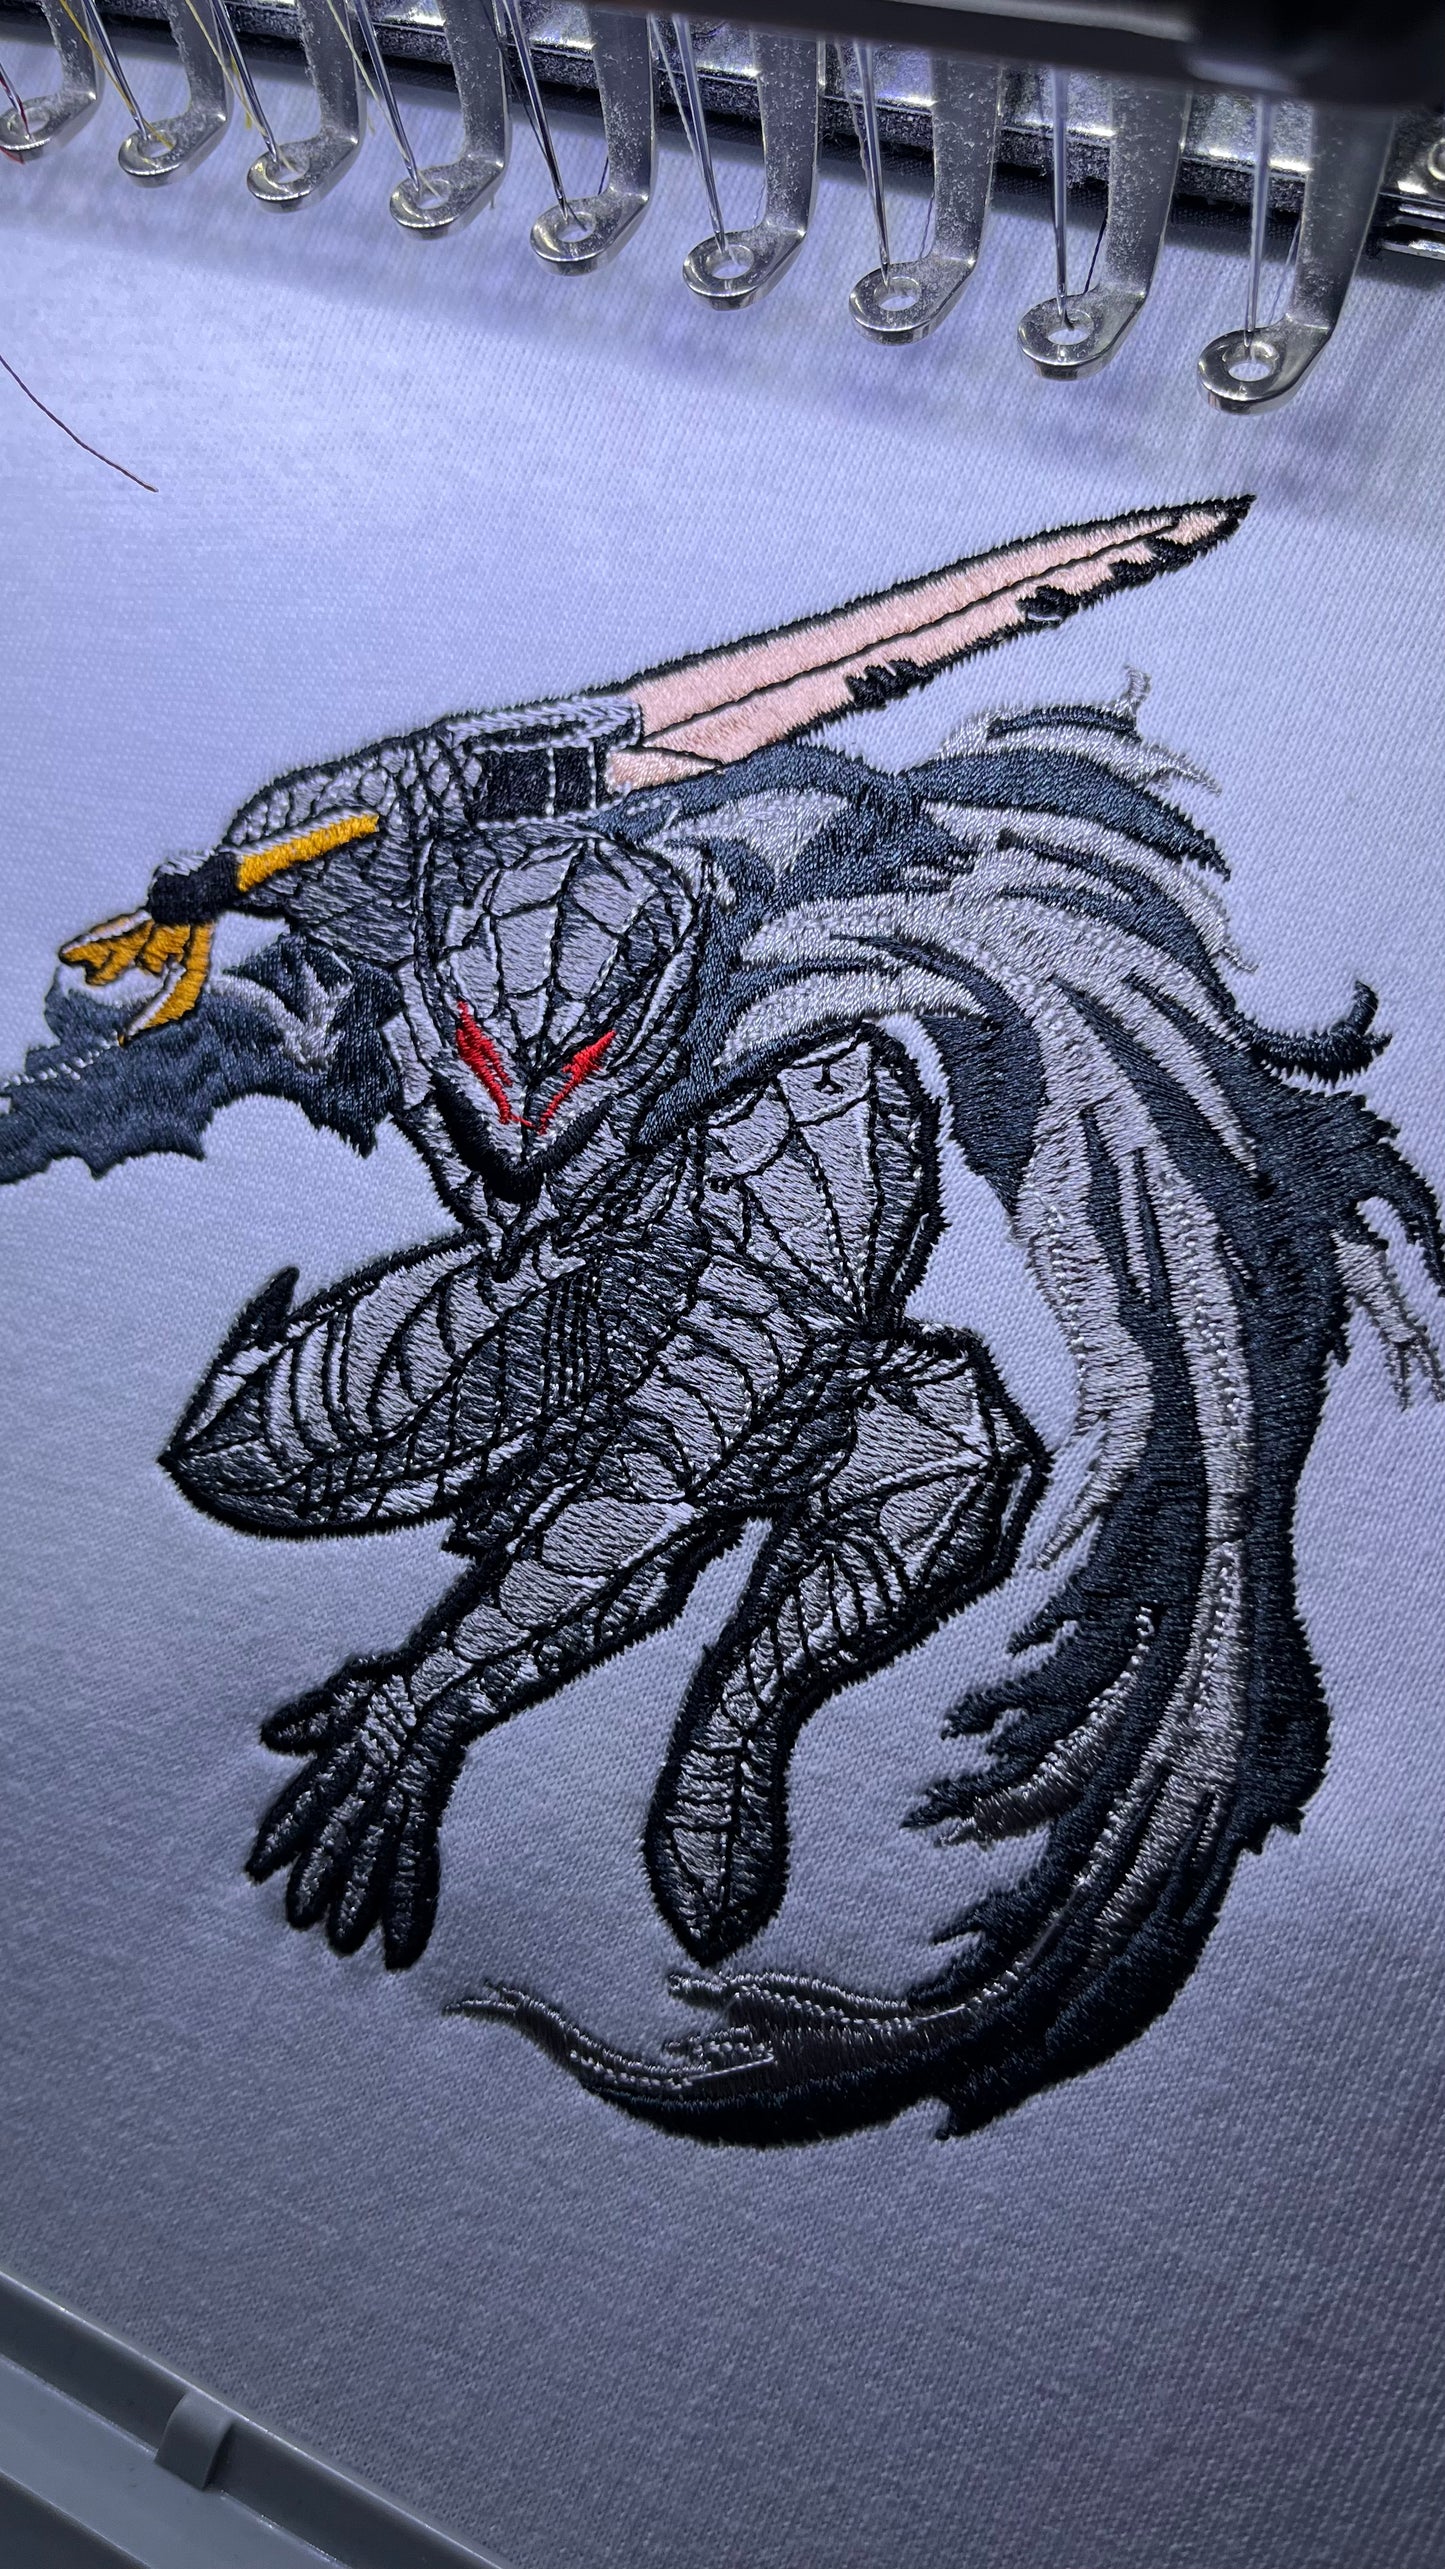 Berserk Demon Armor Embroidery (Berserk)